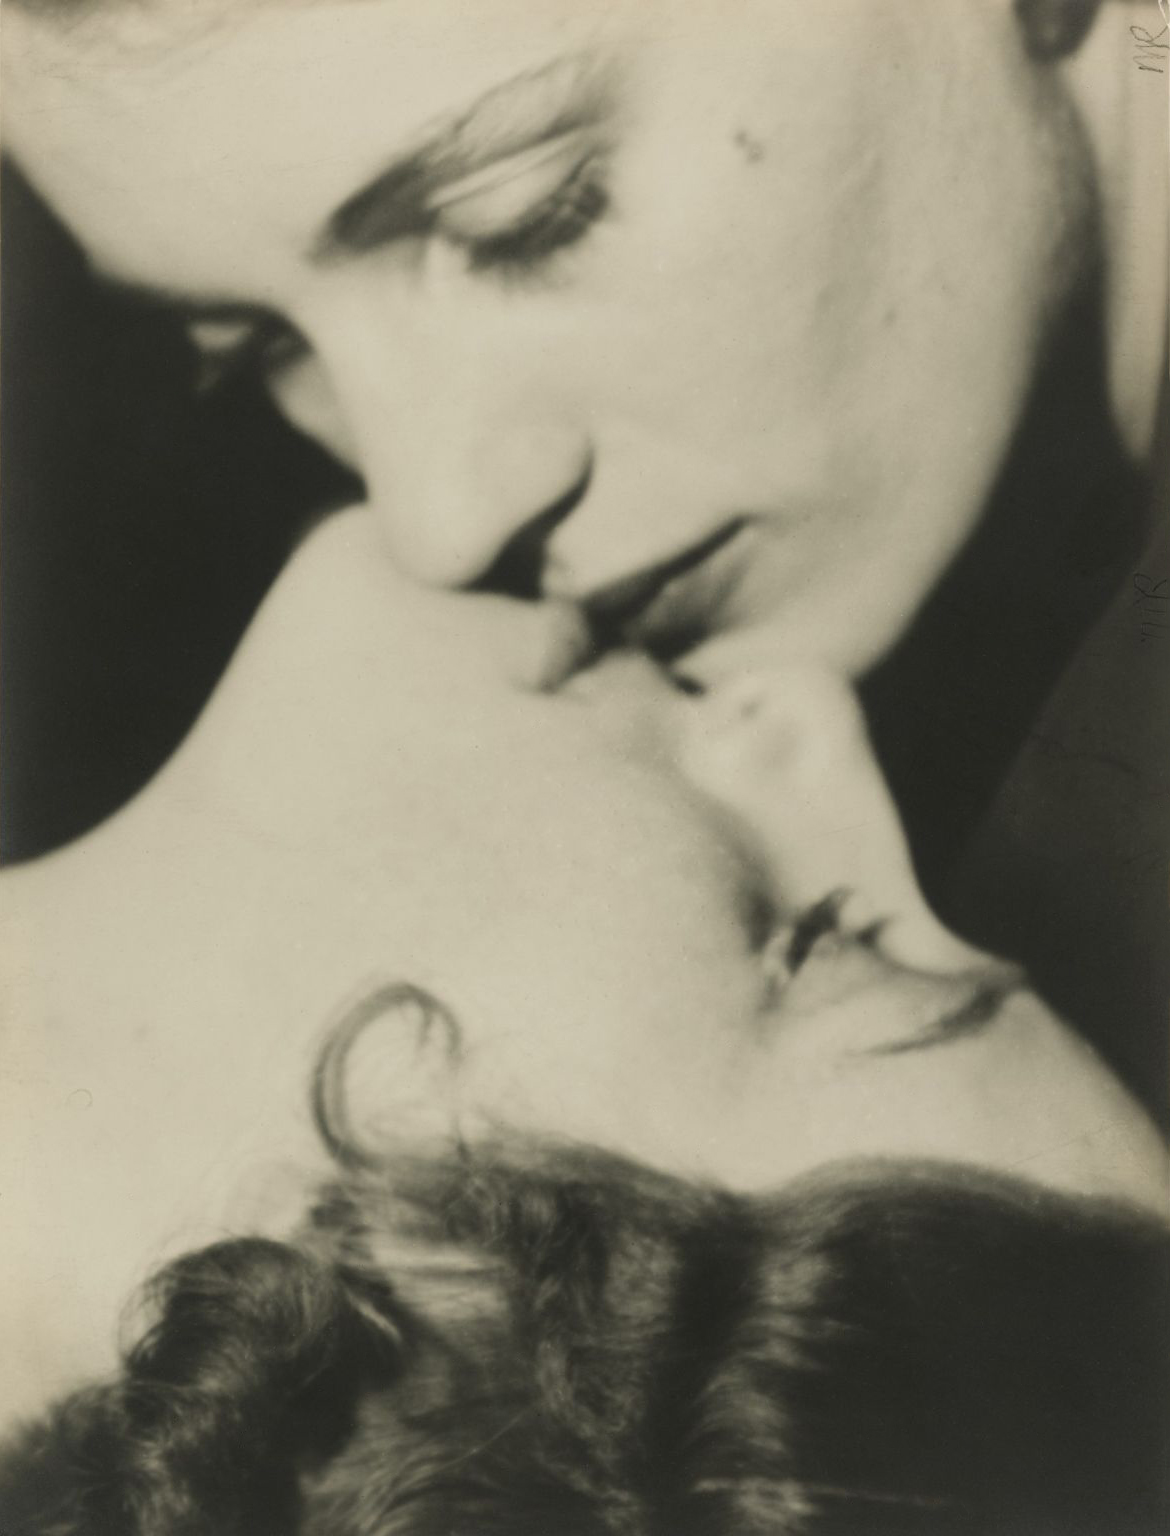 Lesbians many. Lee Miller, 1930. Man ray - Lee Miller, 1930.